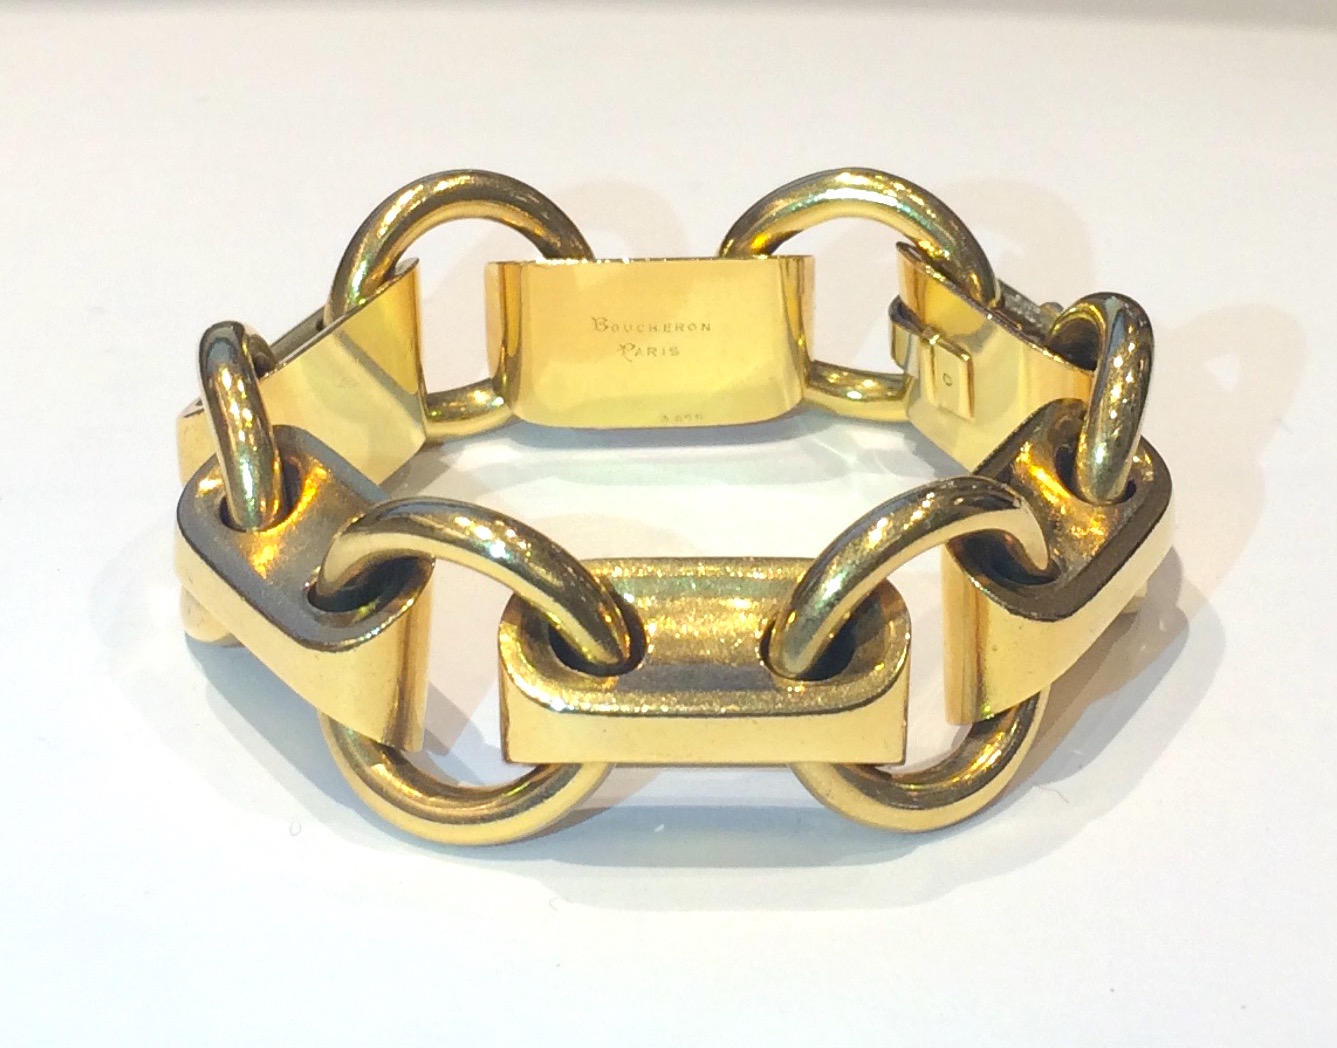 Boucheron Paris Art Deco 18k gold link bracelet, signed, c. 1930’s